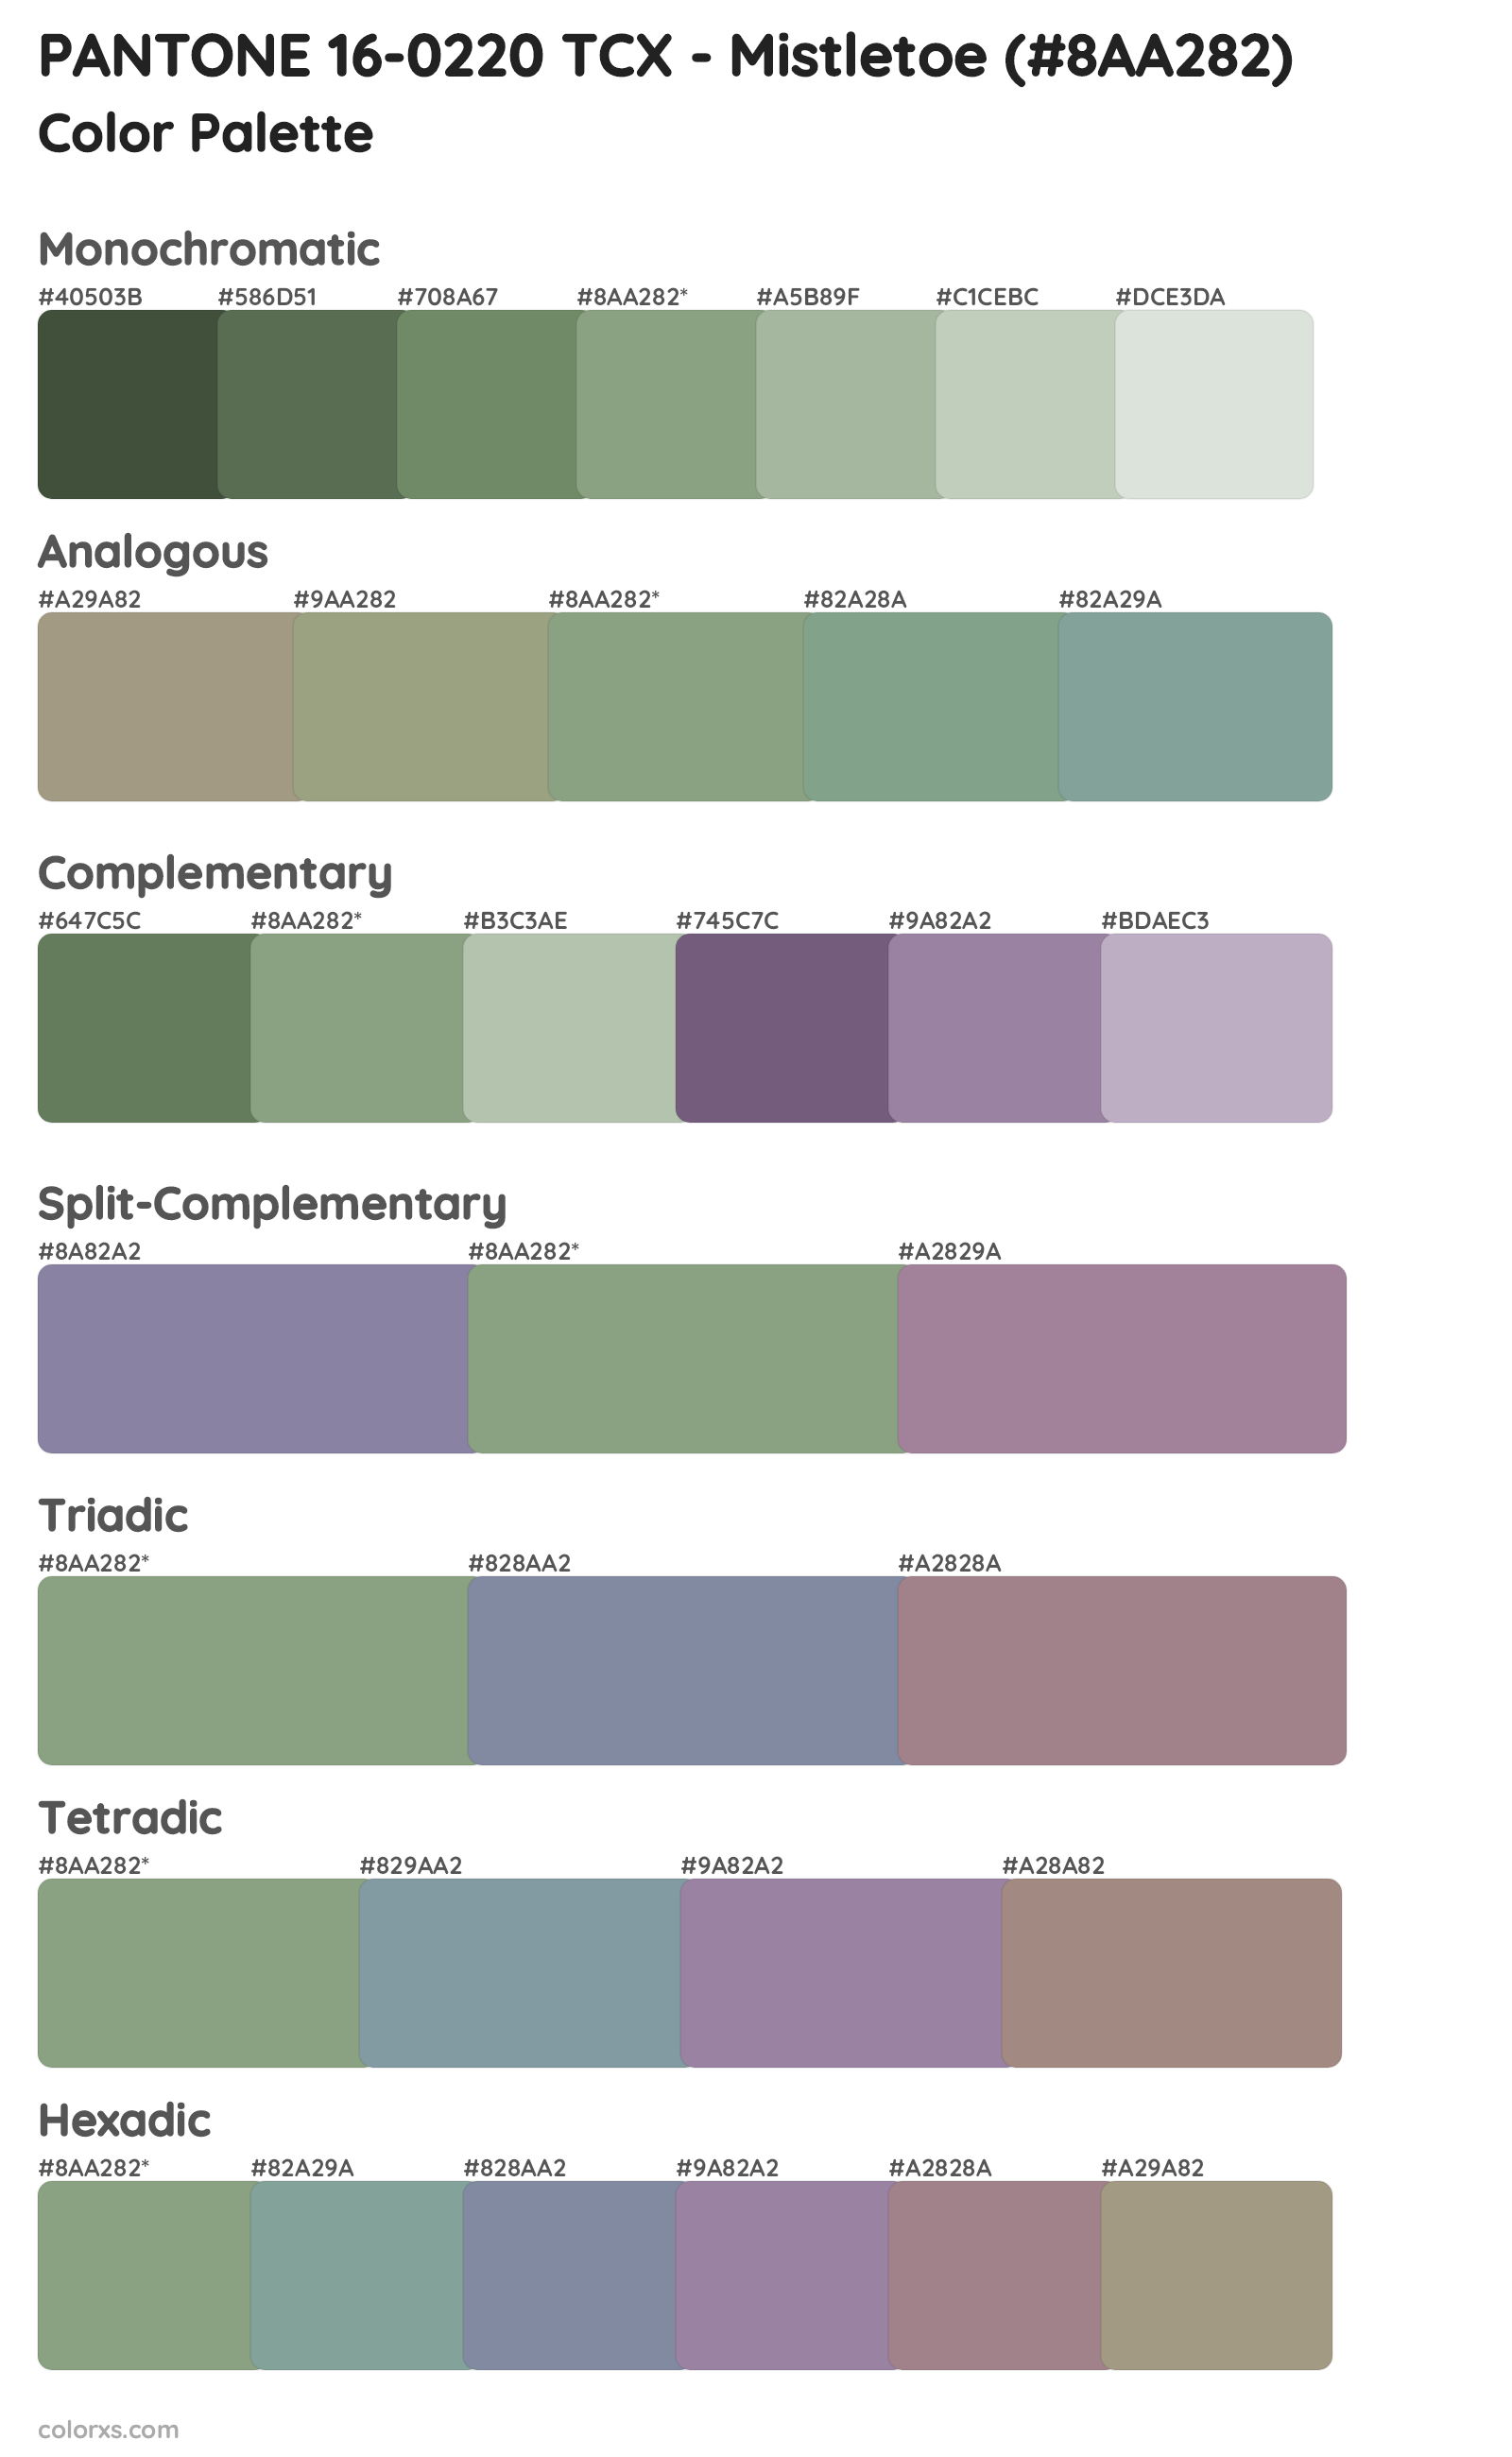 PANTONE 16-0220 TCX - Mistletoe Color Scheme Palettes